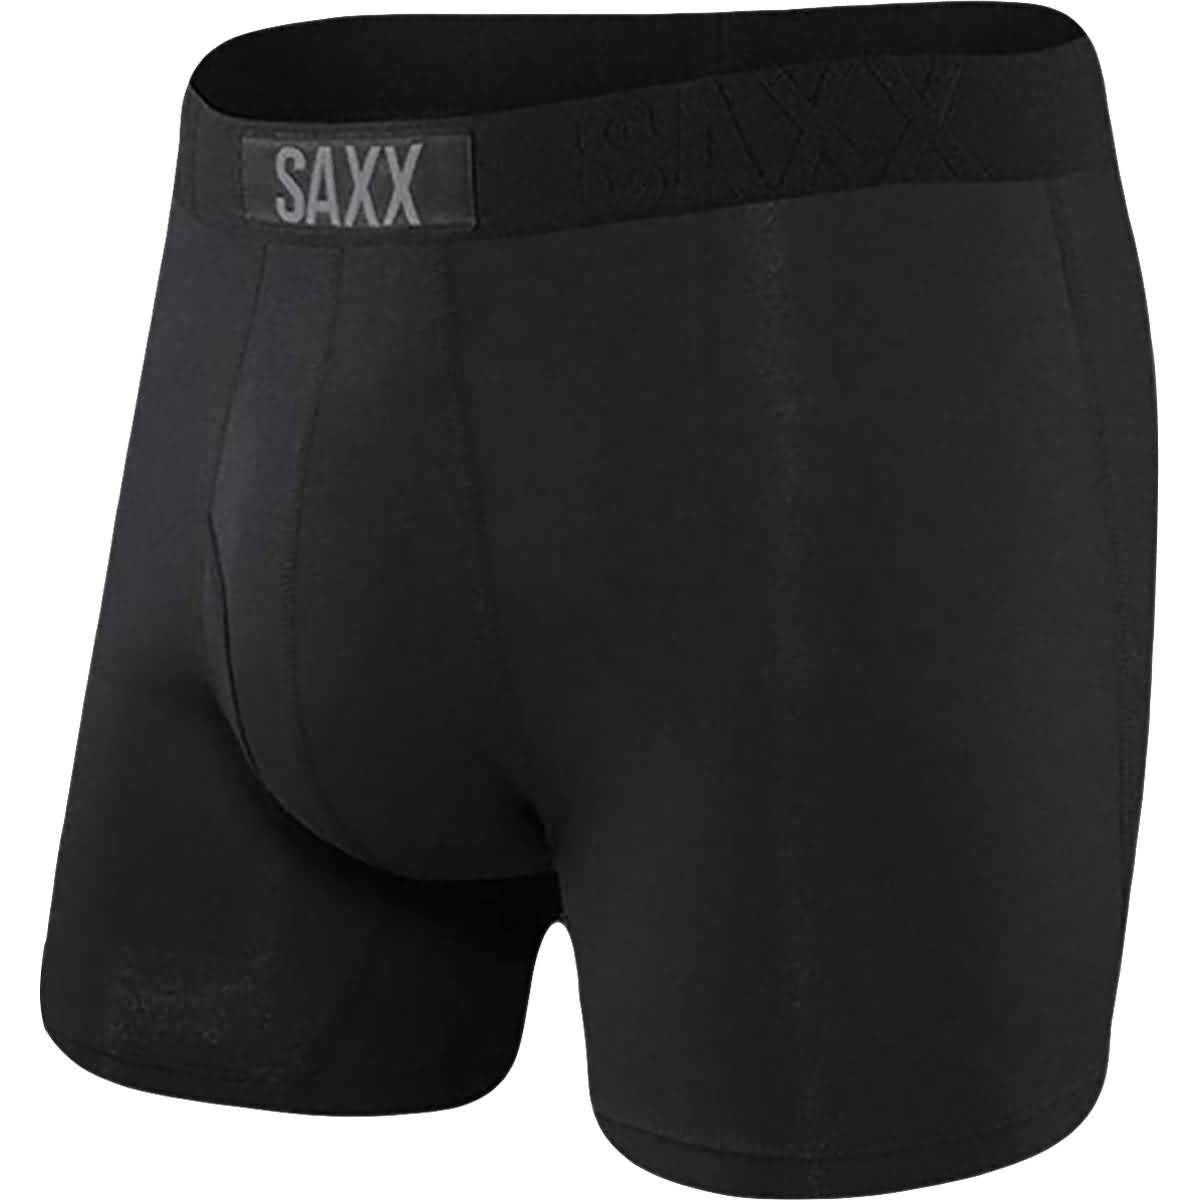 https://originboardshop.com/cdn/shop/products/apparel-saxx-casual-underwear-men-boxer-ultra-w-fly-black_fcfbe136-2388-4585-8fec-8c77ff8a4fdf.jpg?v=1701329059